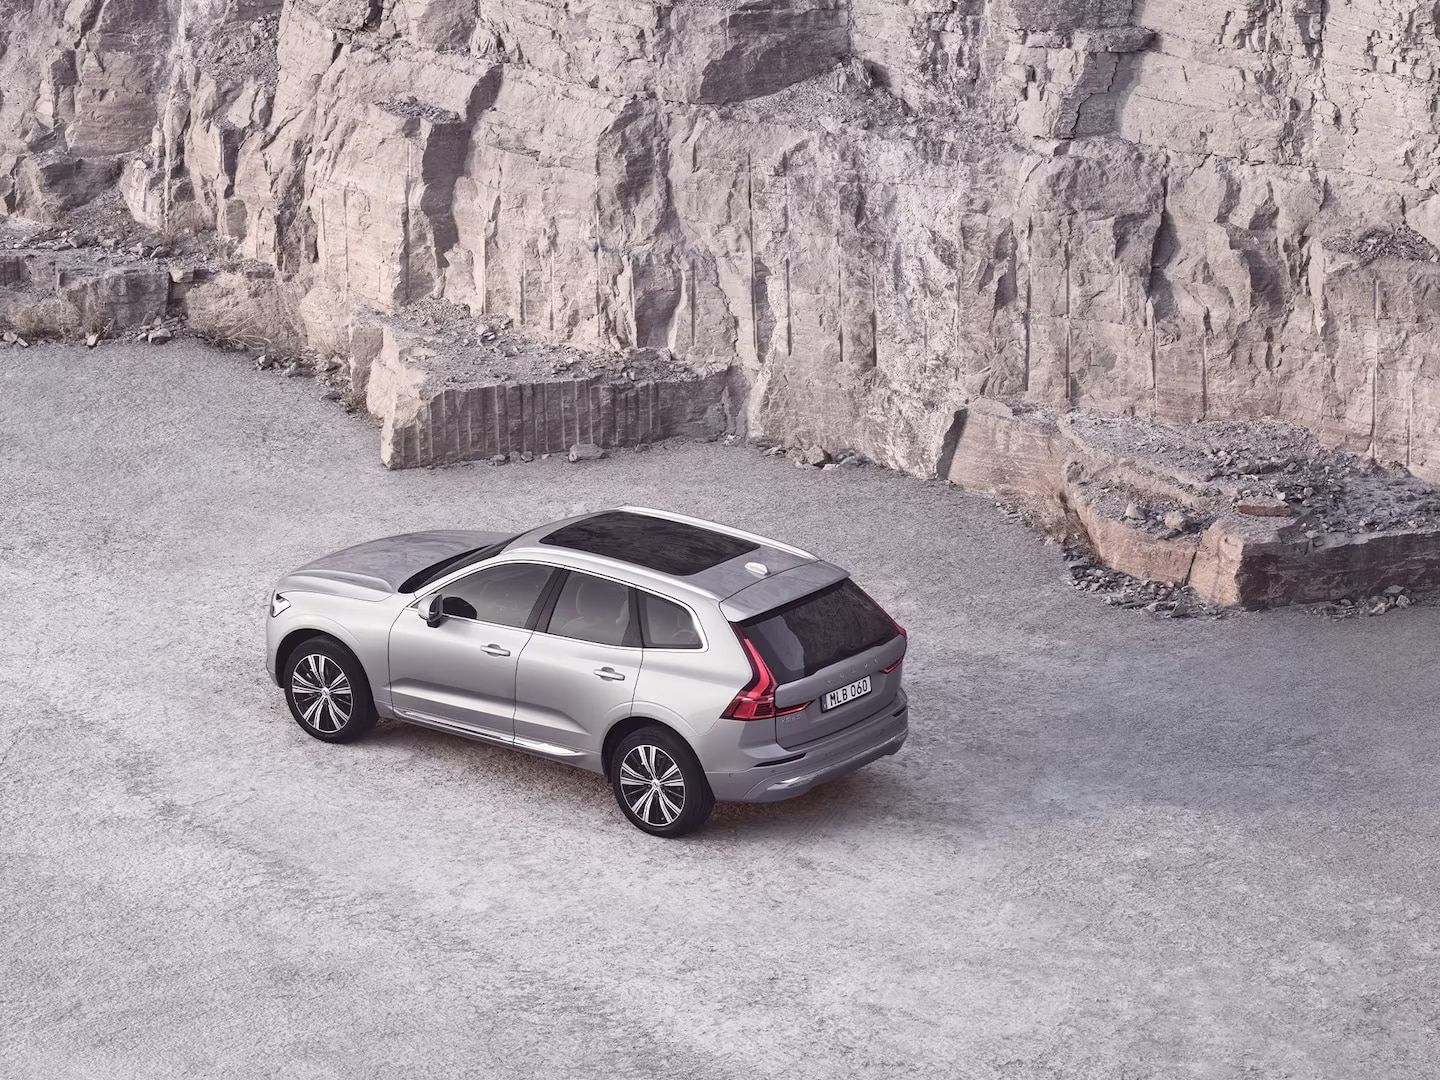 Una Volvo XC60 con tetto panoramico accanto a una parete rocciosa.